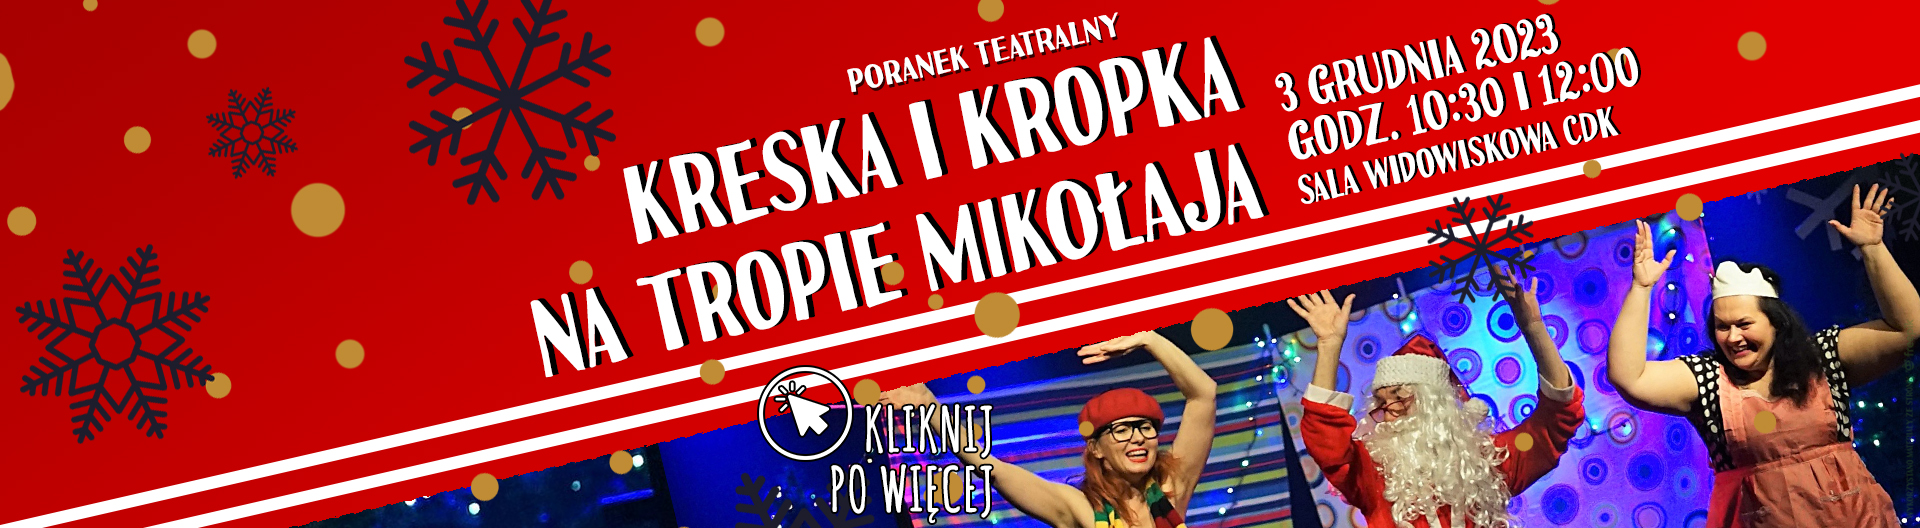 Poranek Teatralny: Kreska i Kropka na tropie Mikołaja - 10:30 i 12:00